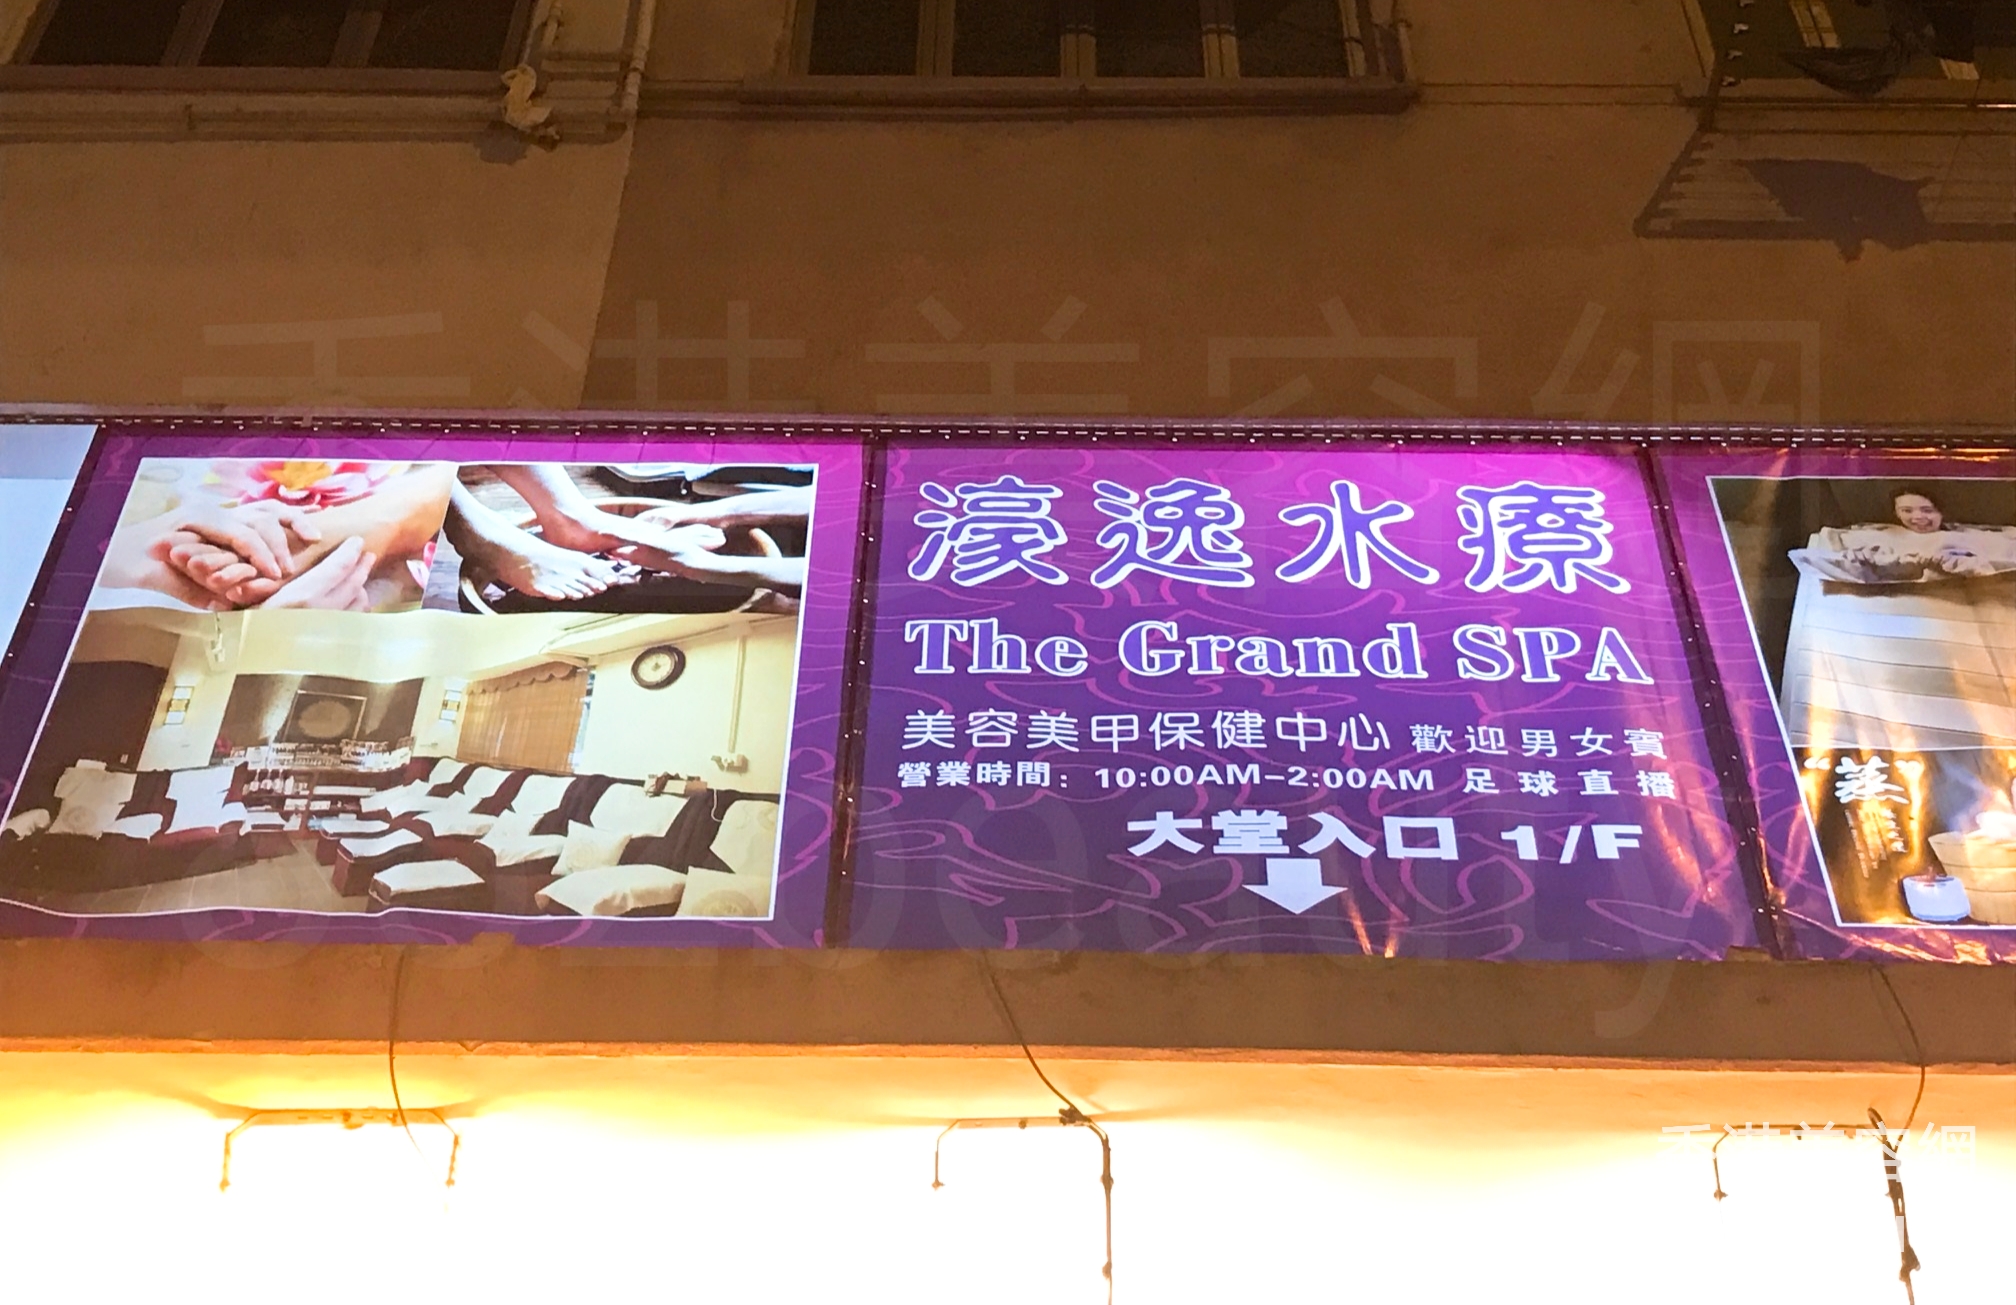 香港美容網 Hong Kong Beauty Salon 美容院 / 美容師: 濠逸水療 The Grand SPA